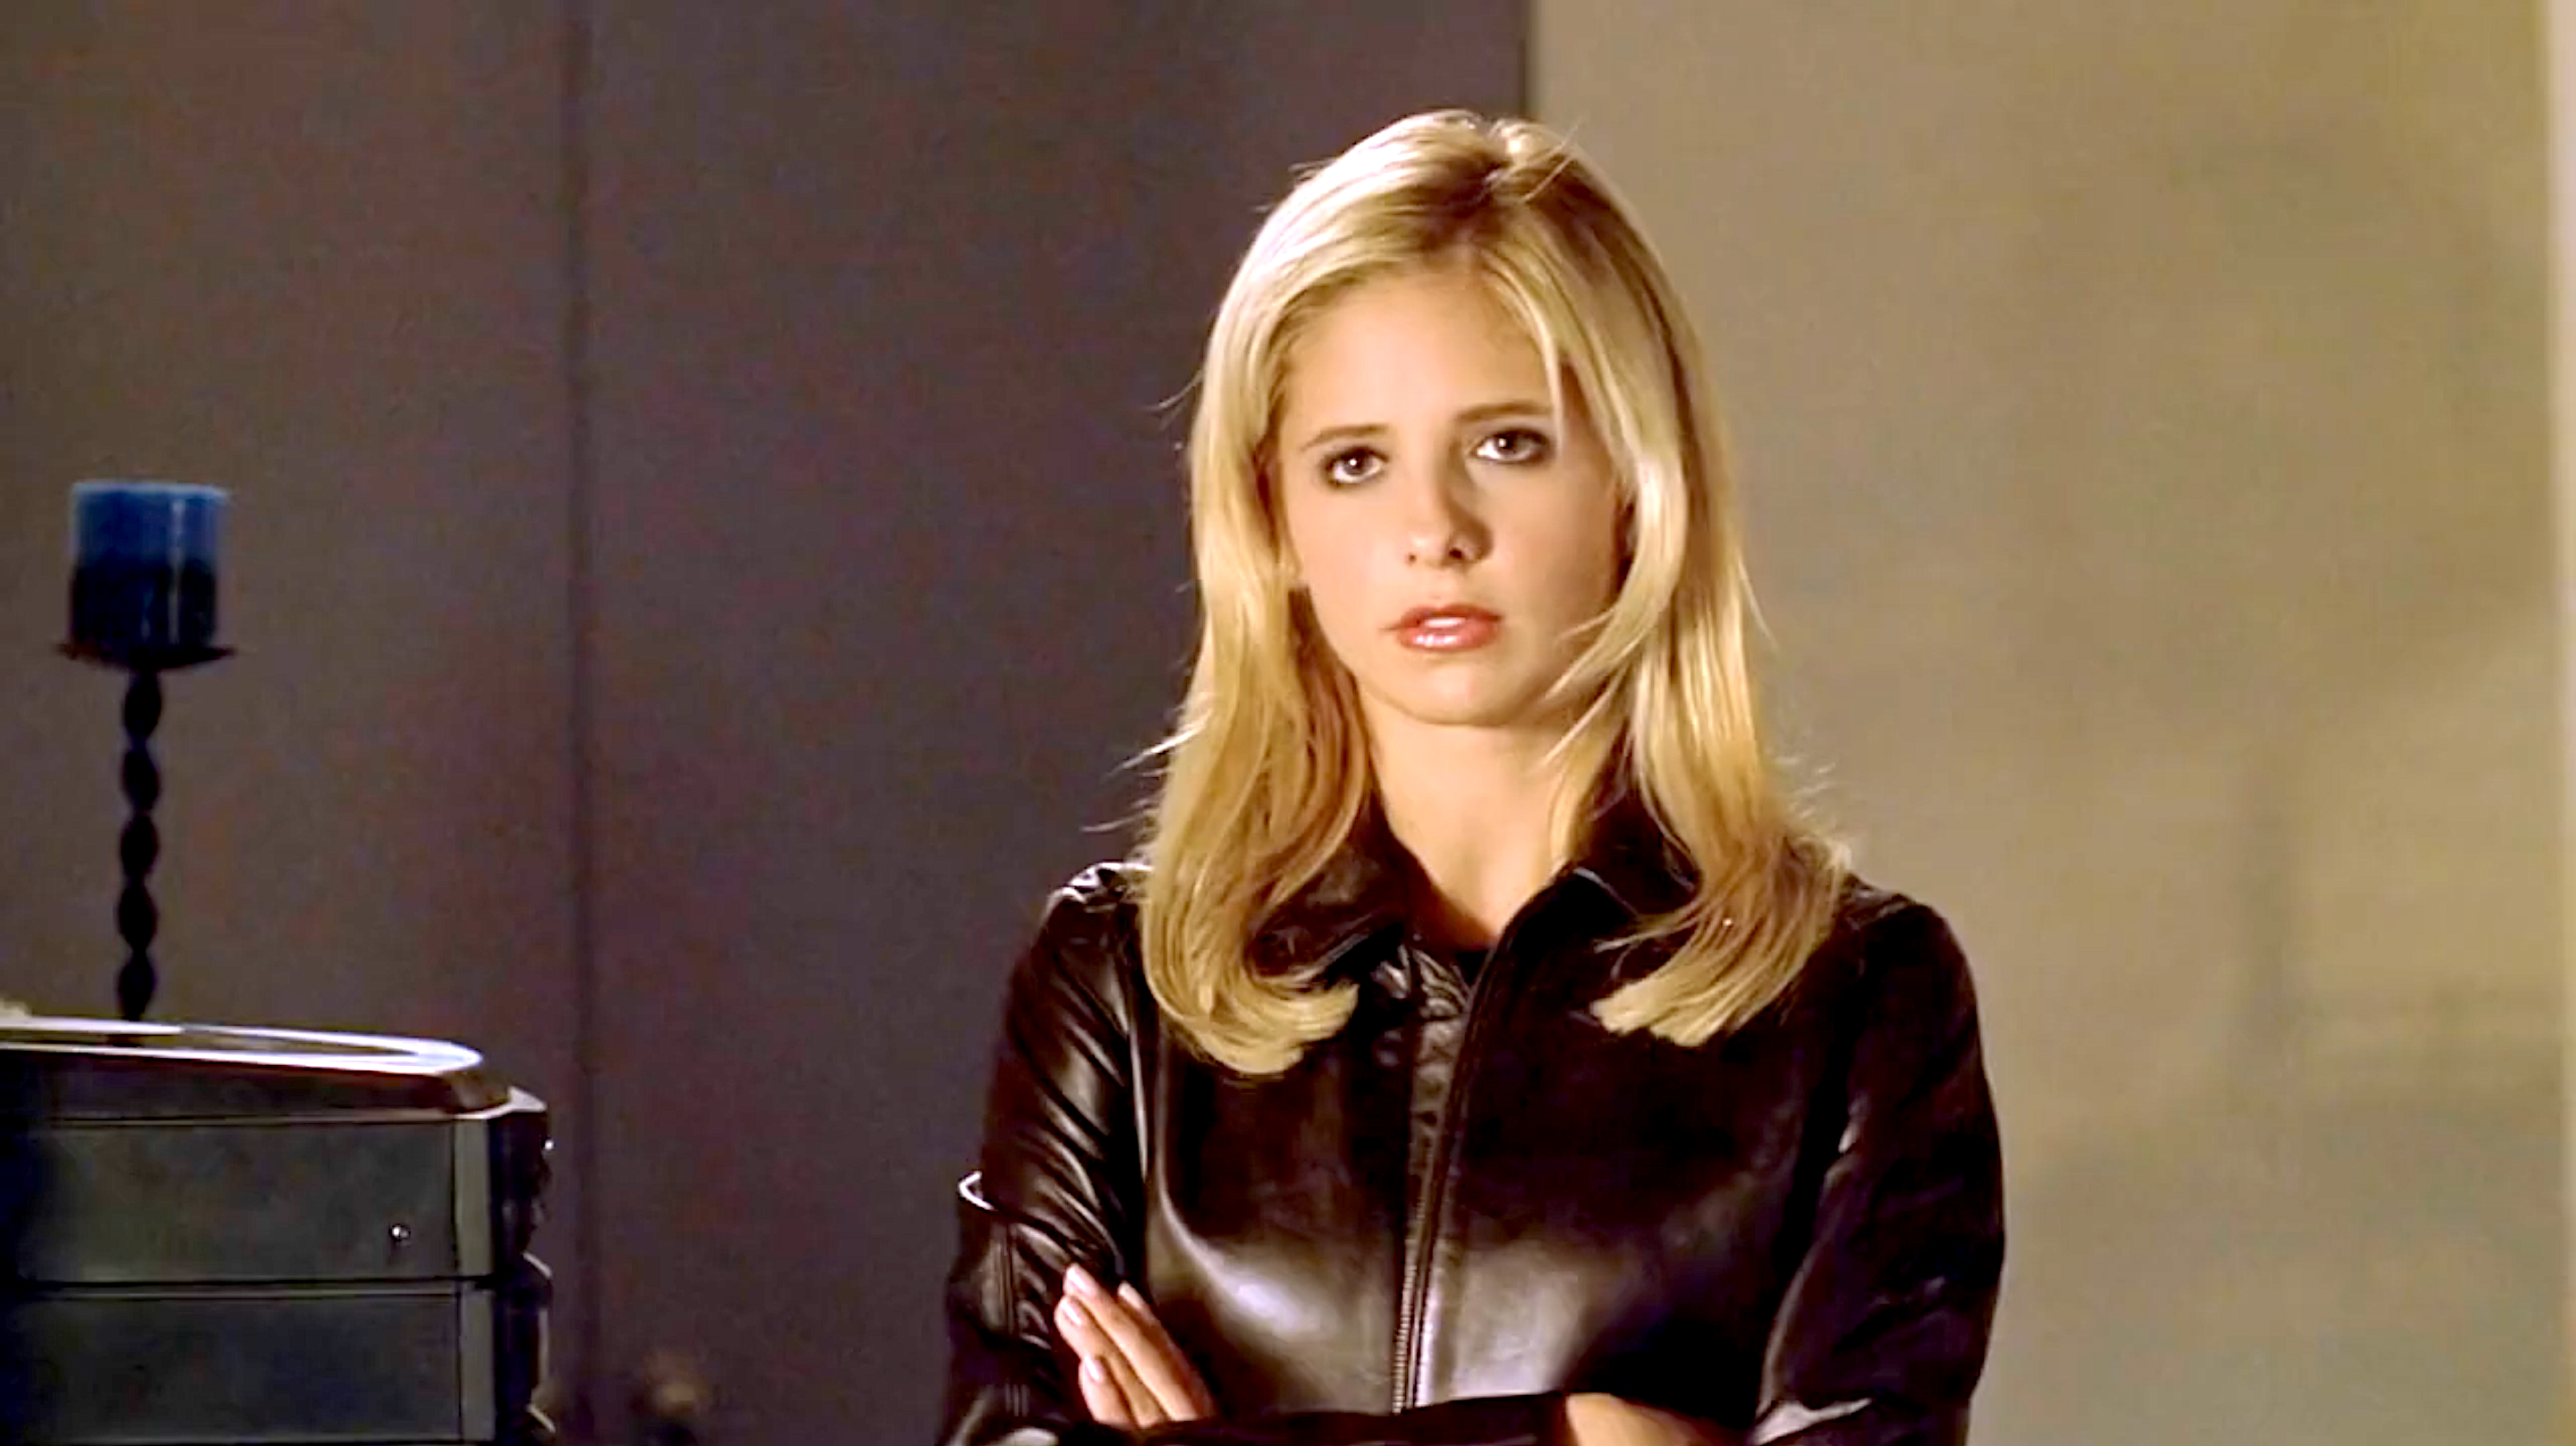 Sarah Michelle Gellar as "Buffy Summers" [BTVS]